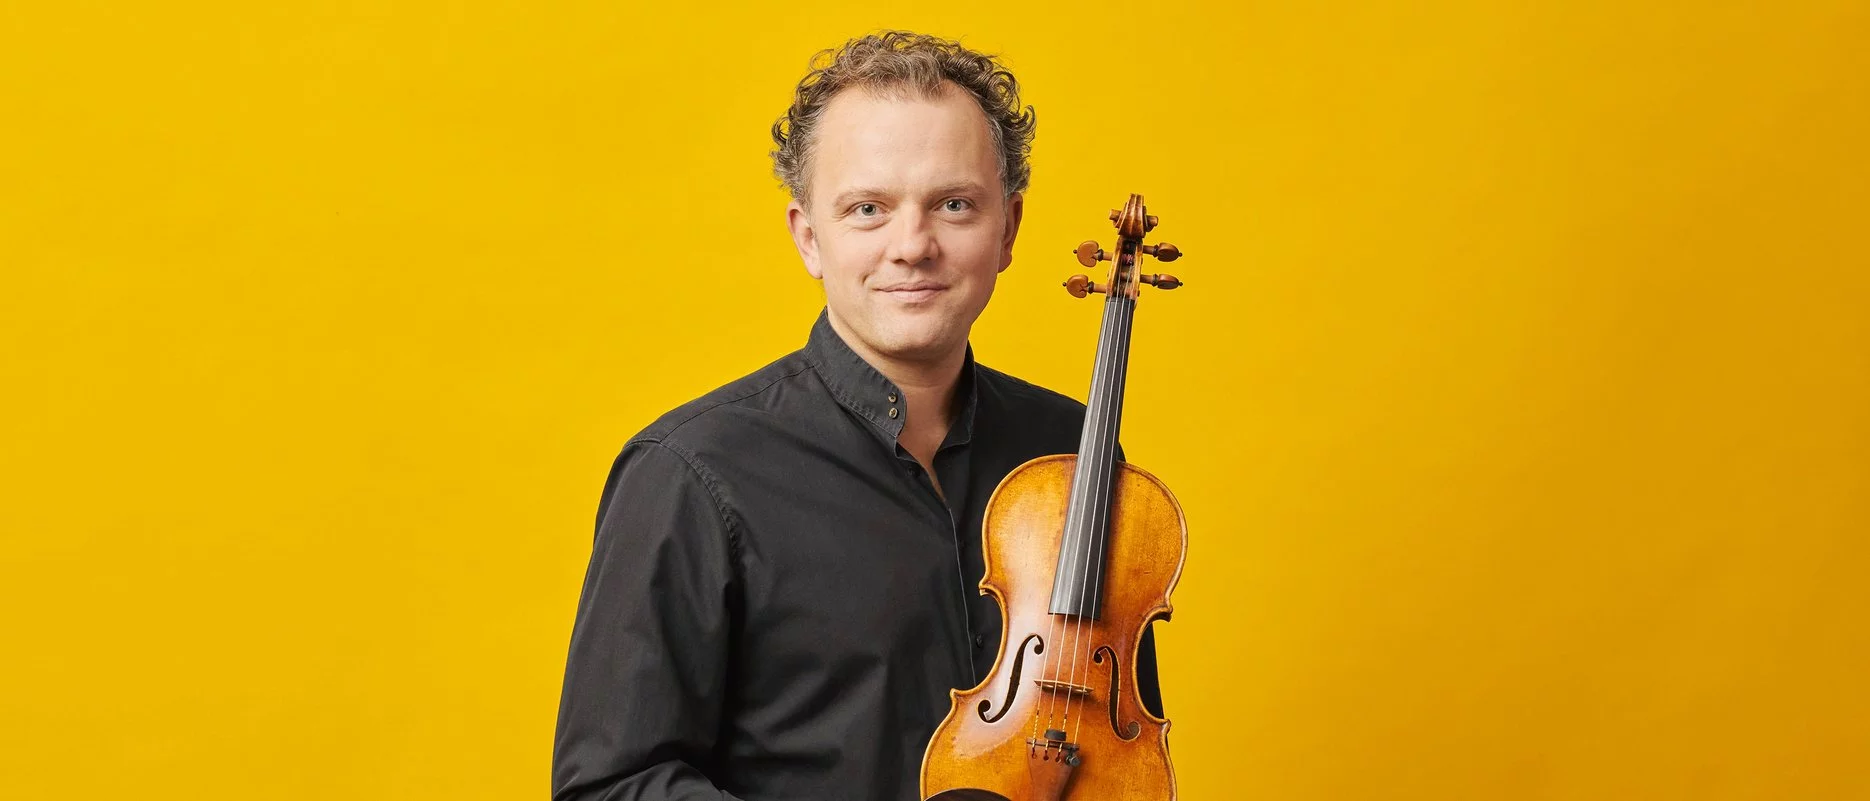 Porträt vor gelbem Hintergrund. Philipp Bohnen hält seine Geige in der Hand.